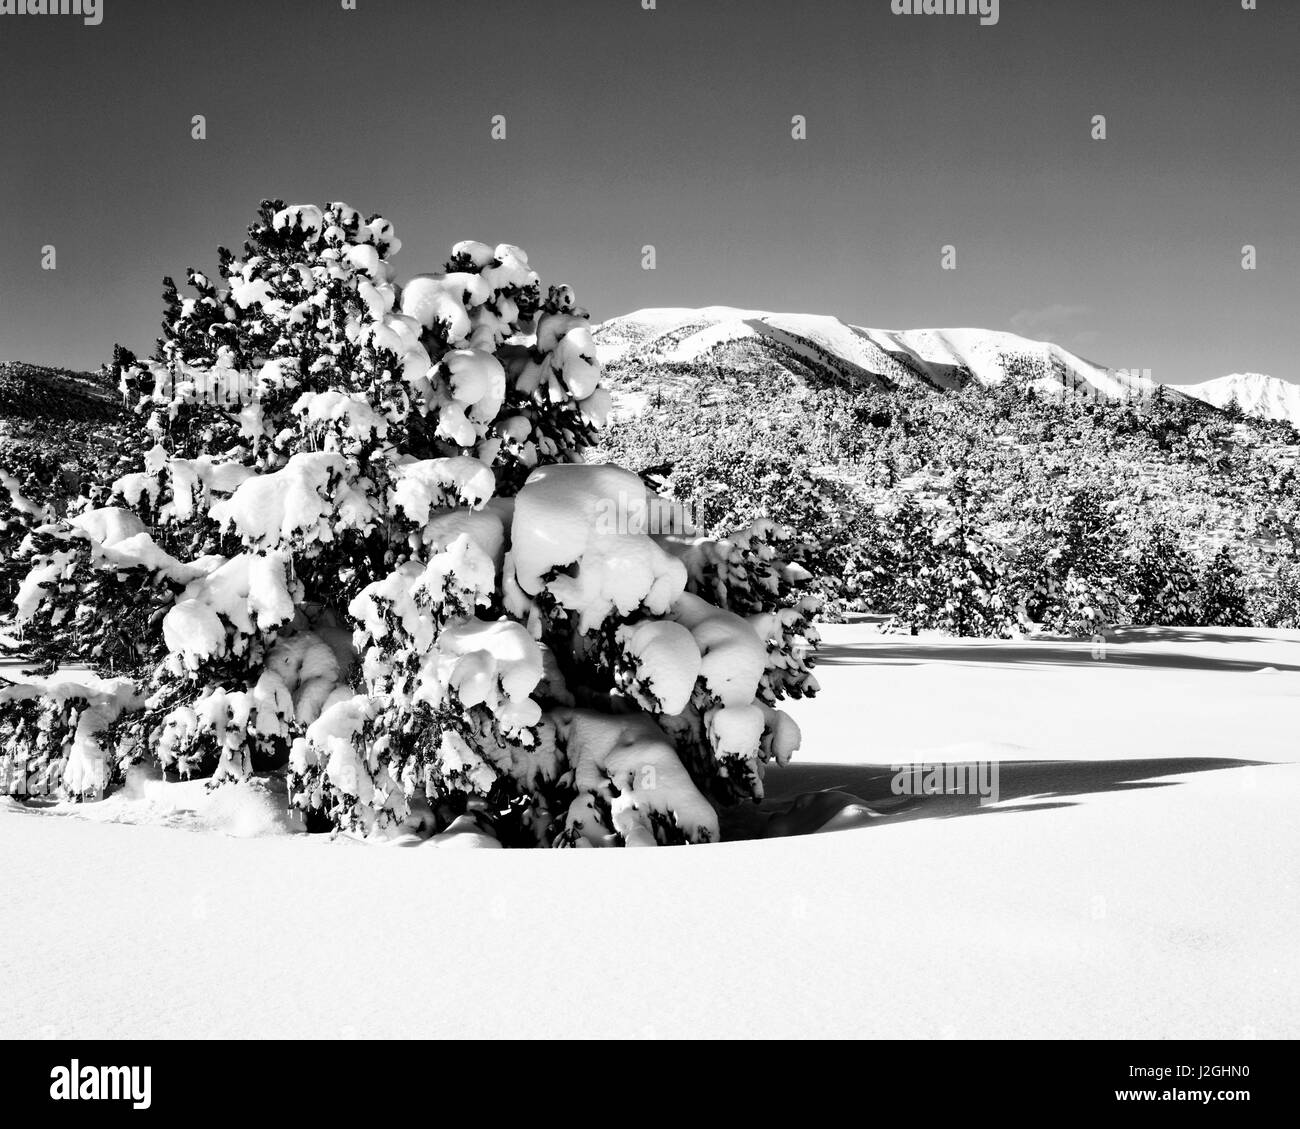 Stati Uniti, California, Sierra Nevada. La luce del mattino sul paesaggio invernale. Credito come: Dennis Flaherty Jaynes / Galleria / DanitaDelimont.com (formato di grandi dimensioni disponibili) Foto Stock